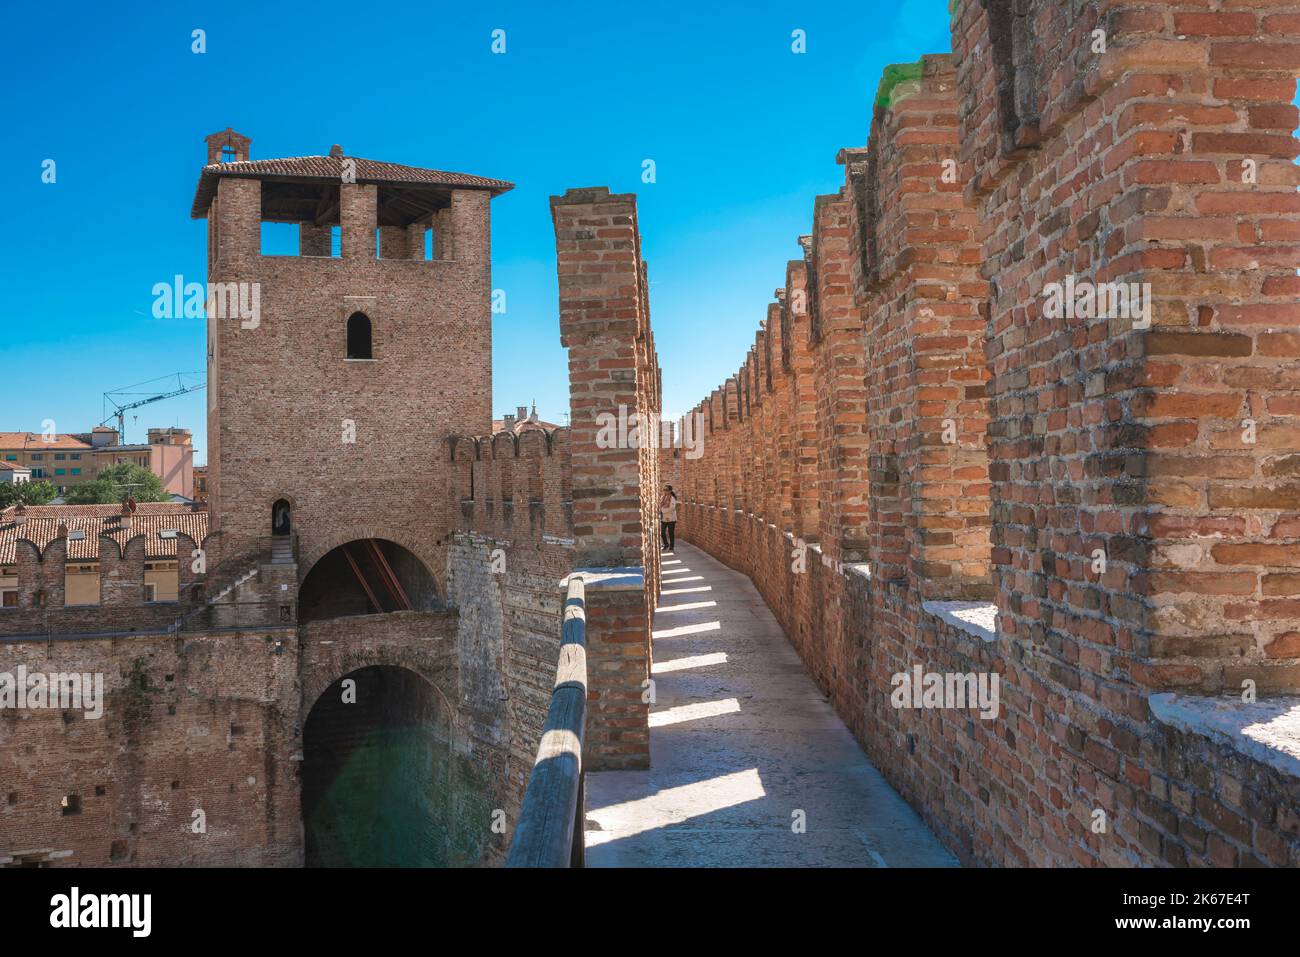 Castello medievale, vista in estate del passaggio tra i merlamenti della parete sud-orientale del 14th ° secolo Castelvecchio, Verona, Italia Foto Stock